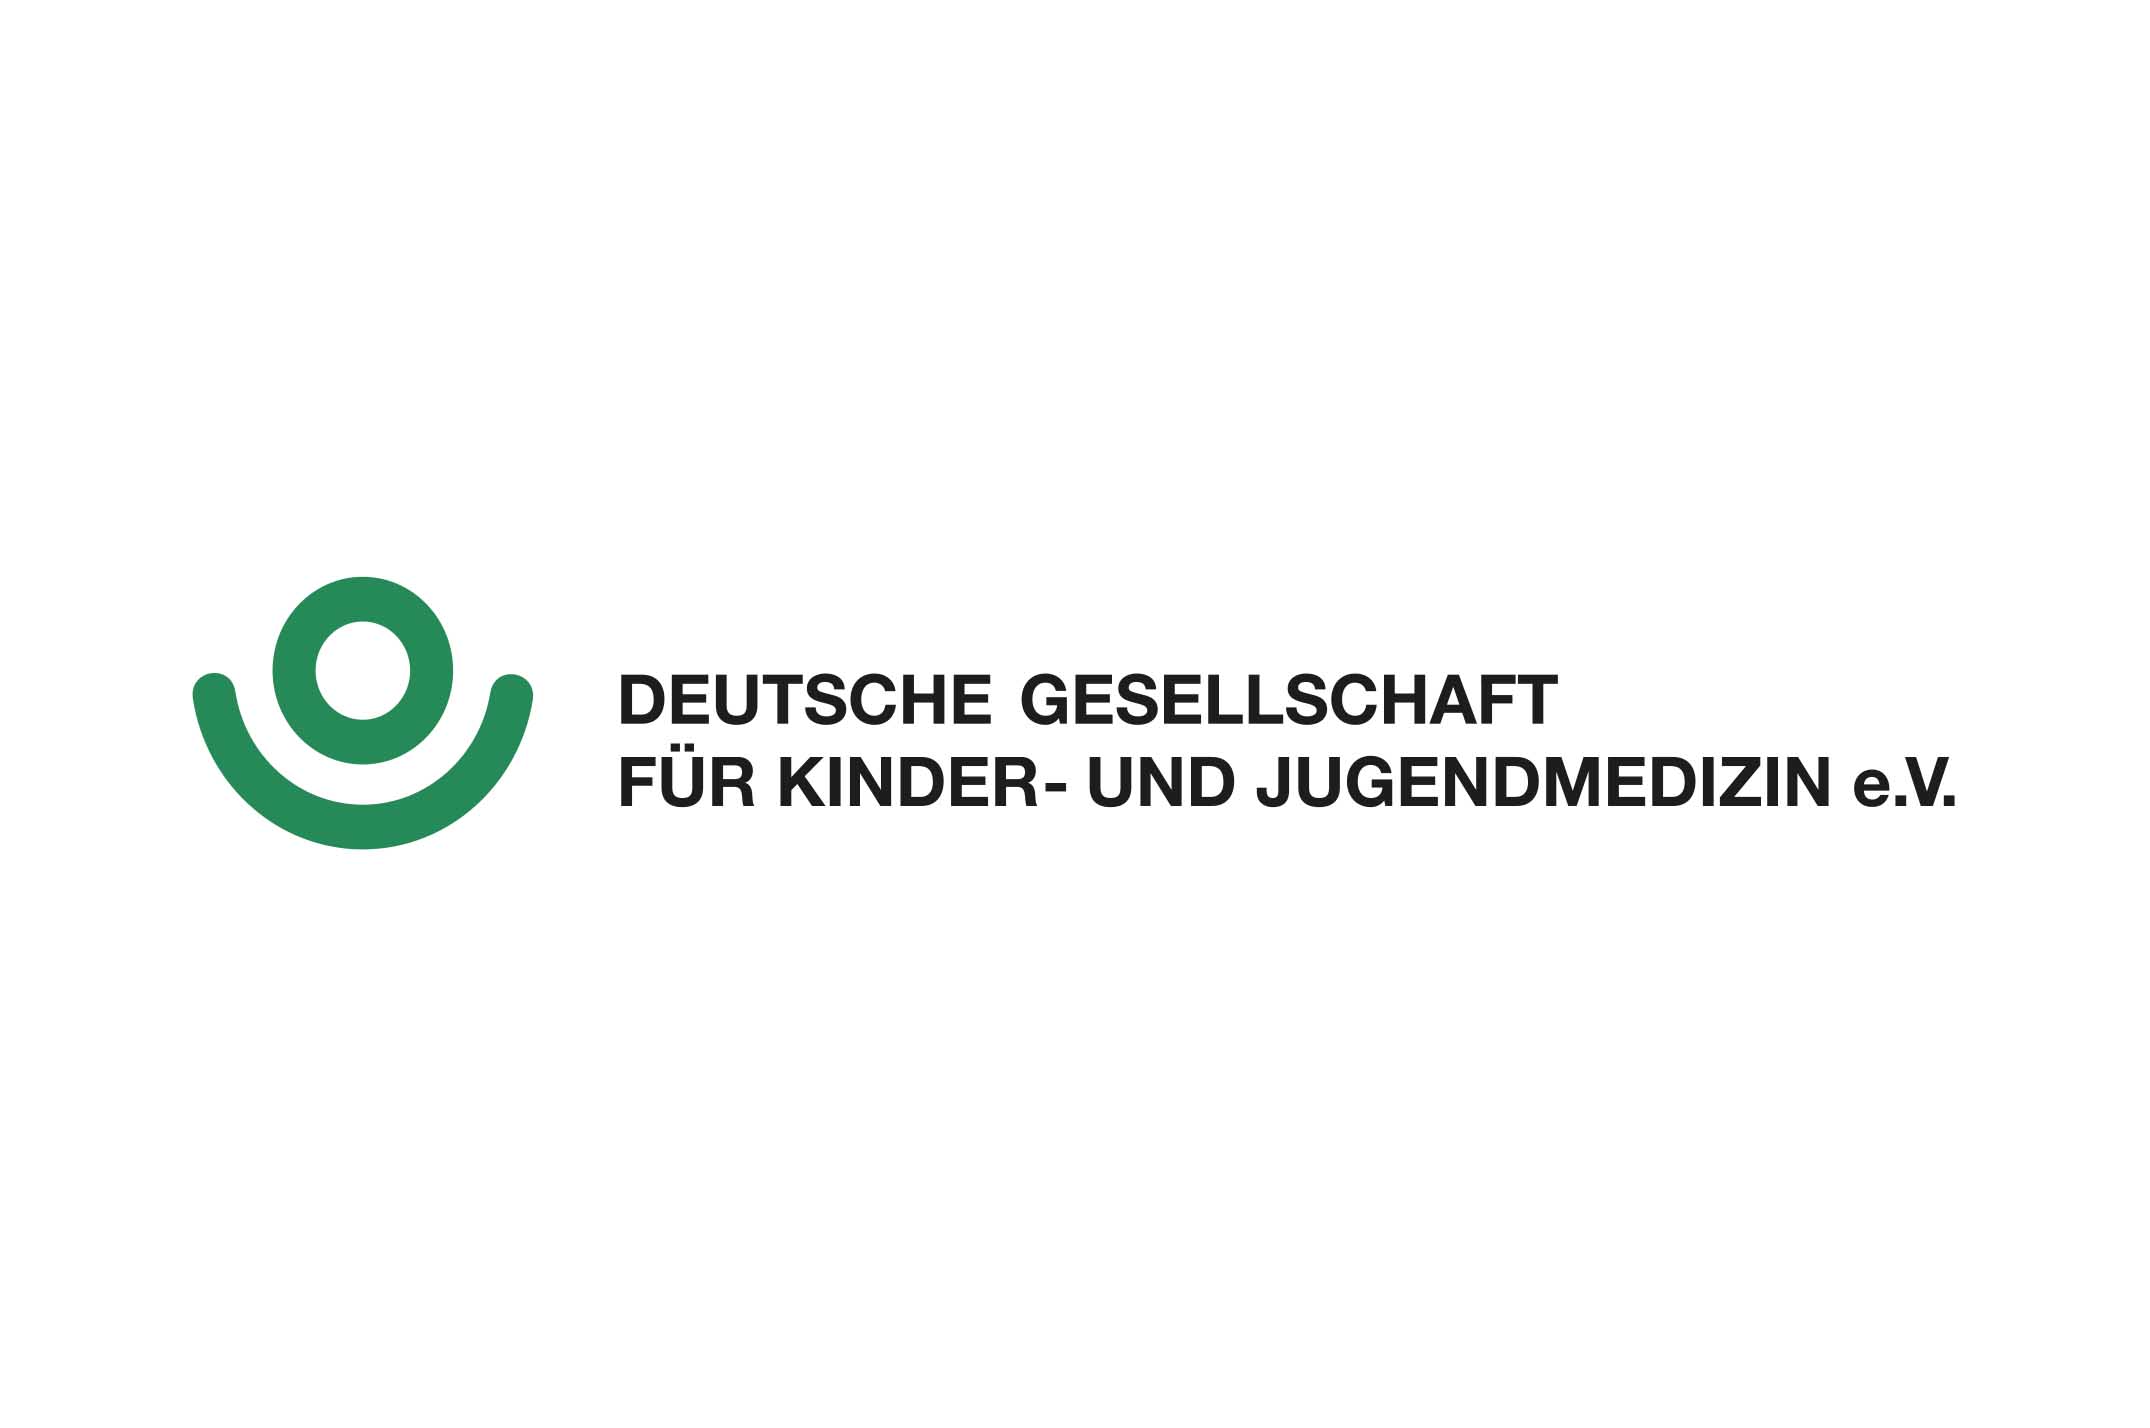 Deutsche Gesellschaft für Kinder- und Jugendmedizin e.V.